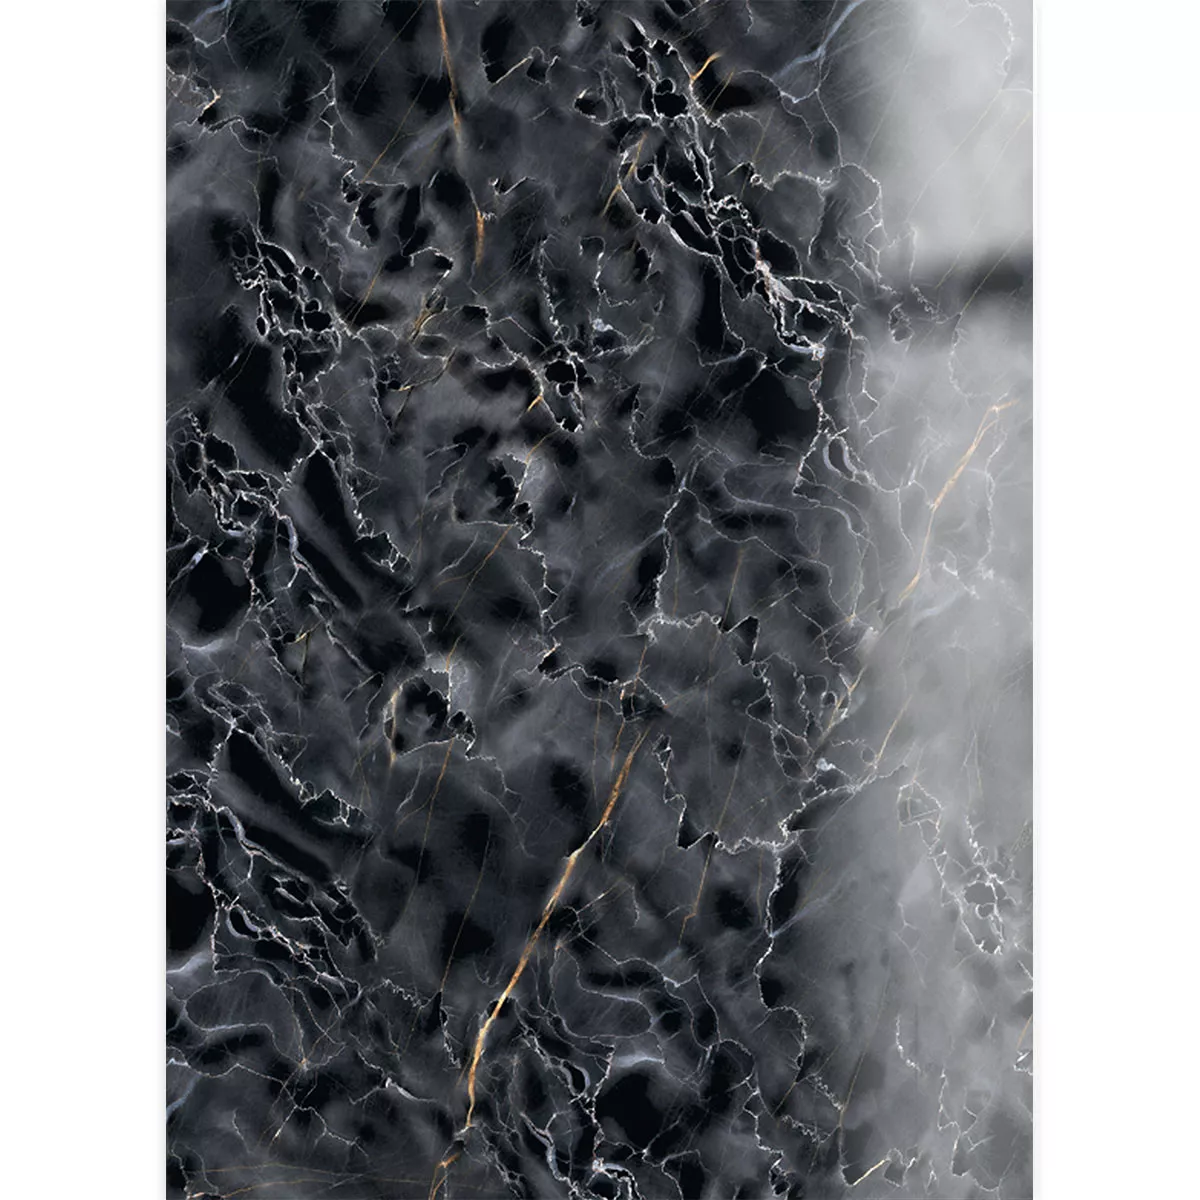 Bodenfliesen Latium Marmoroptik Poliert Glänzend Schwarz 60x120cm